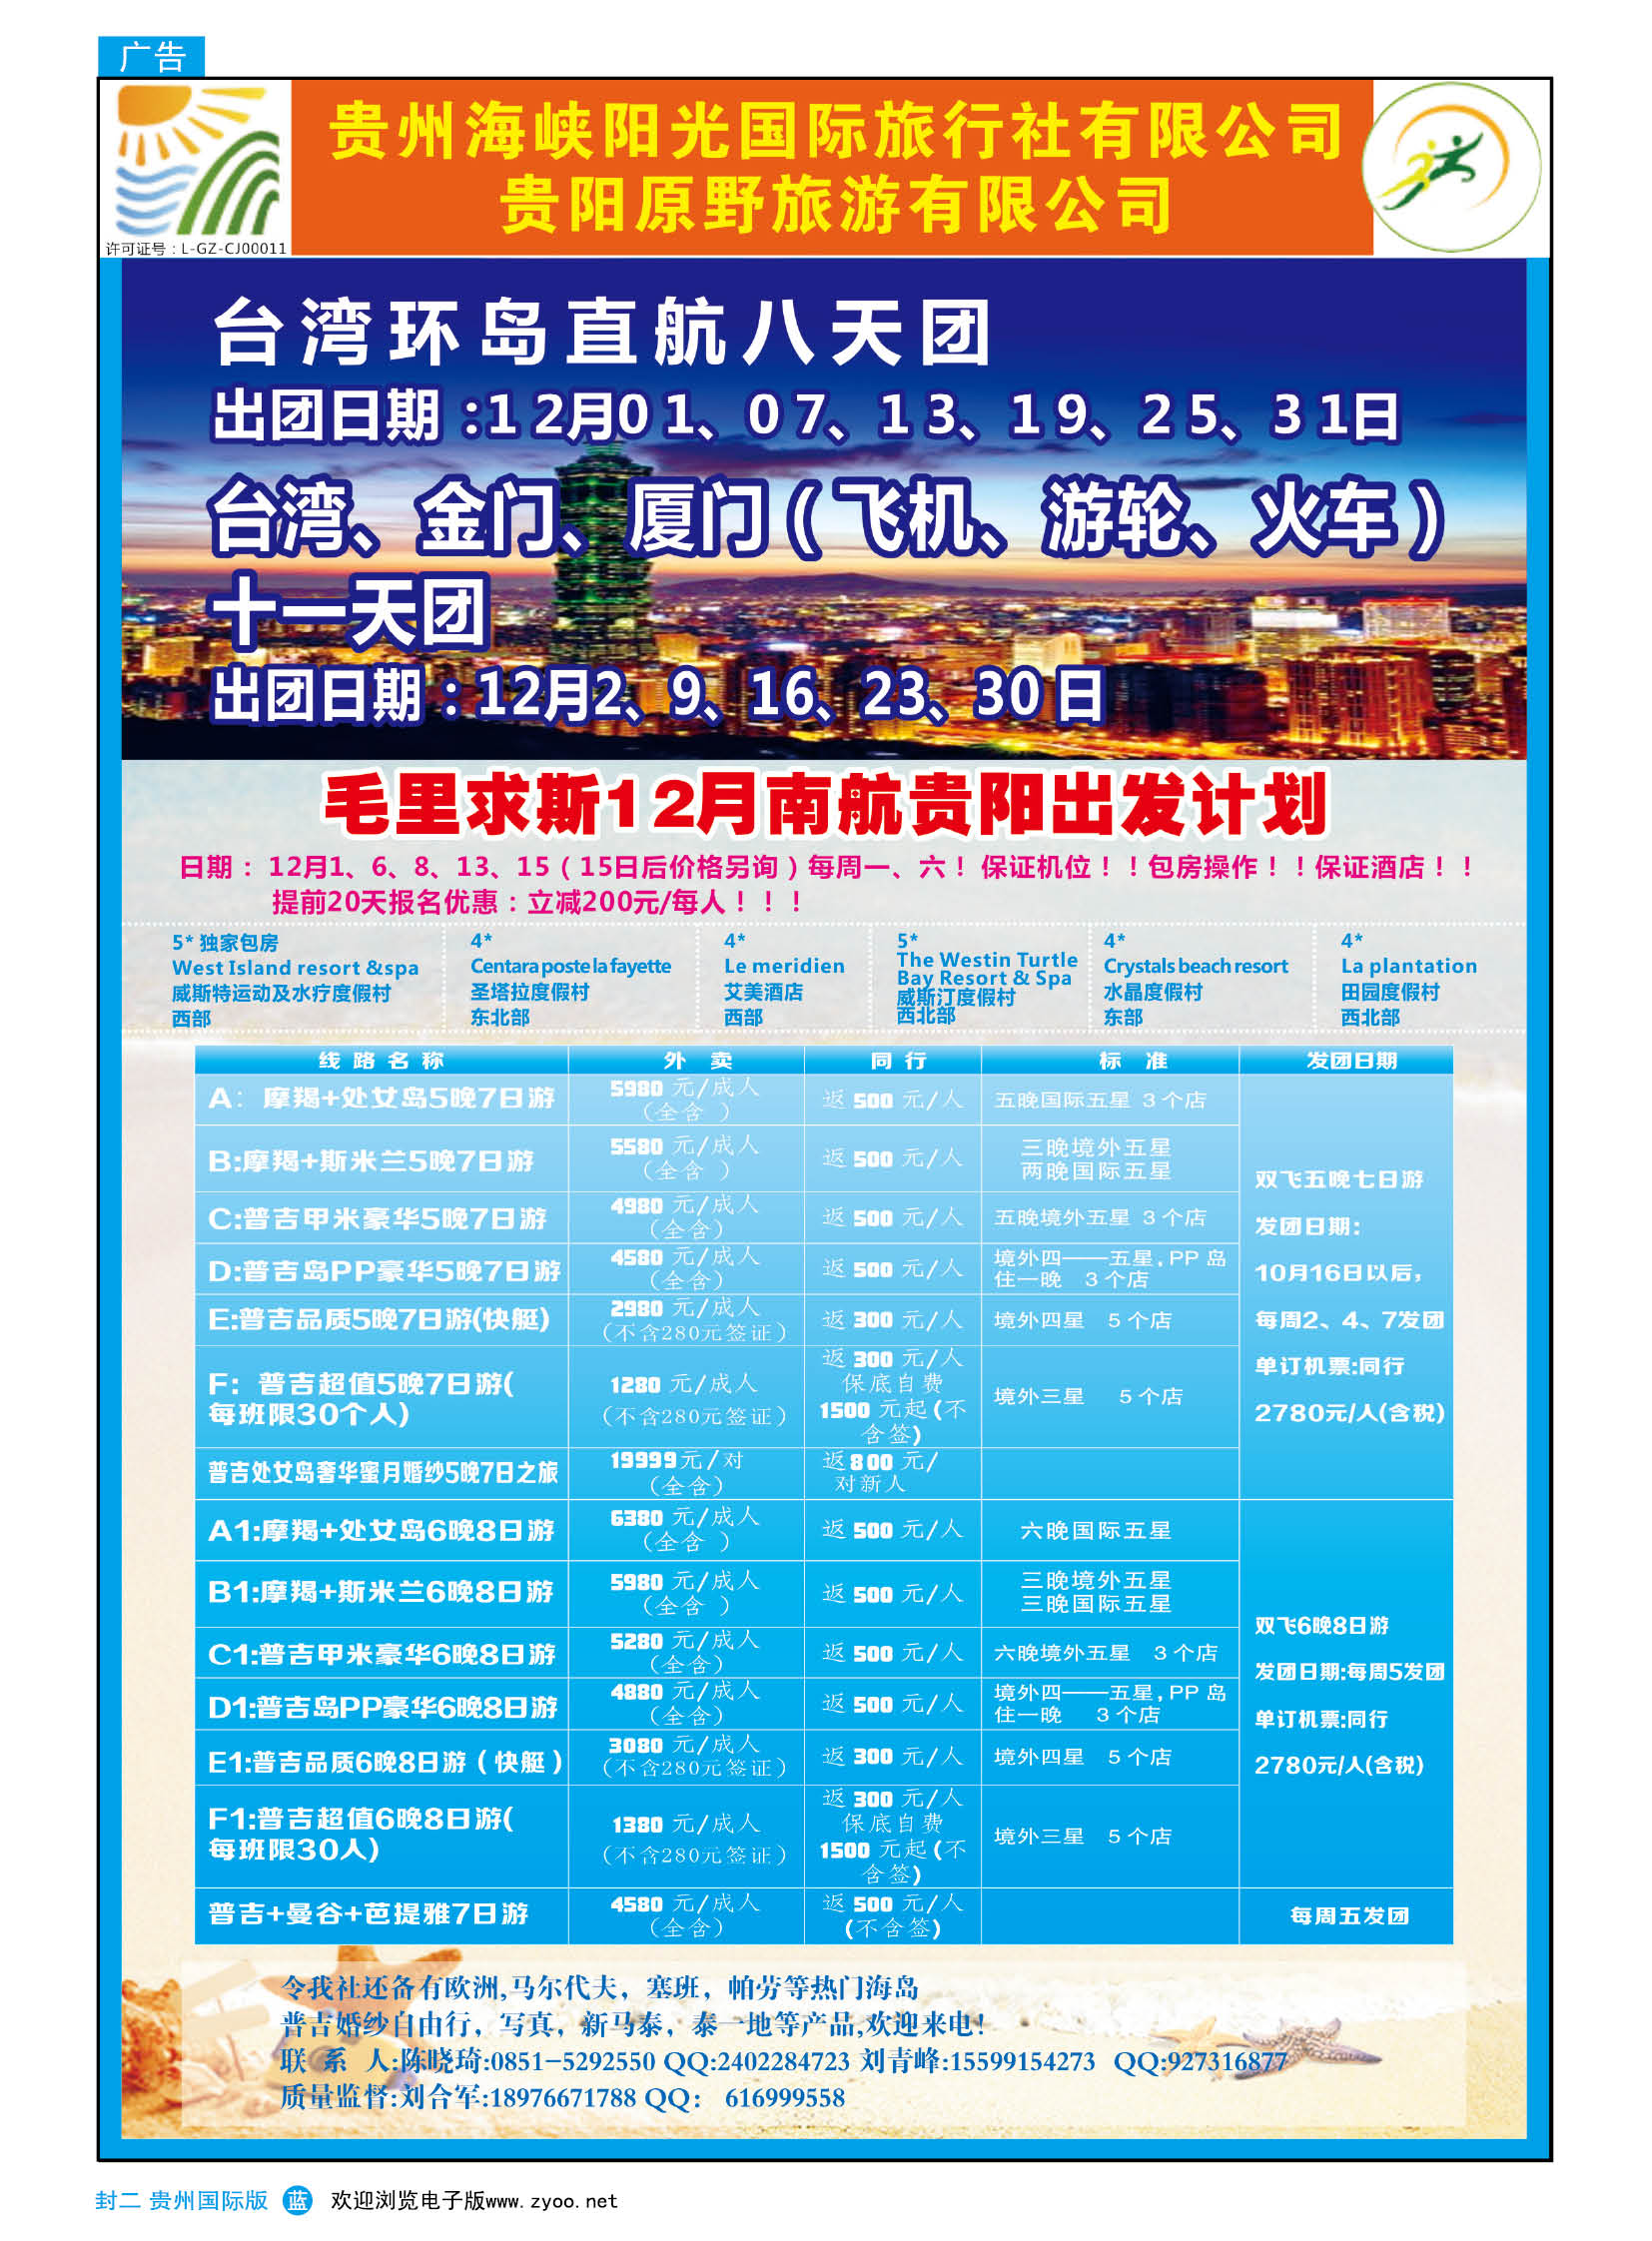 502期国际版封二  贵州海峡阳光国际旅行社——出境旅游